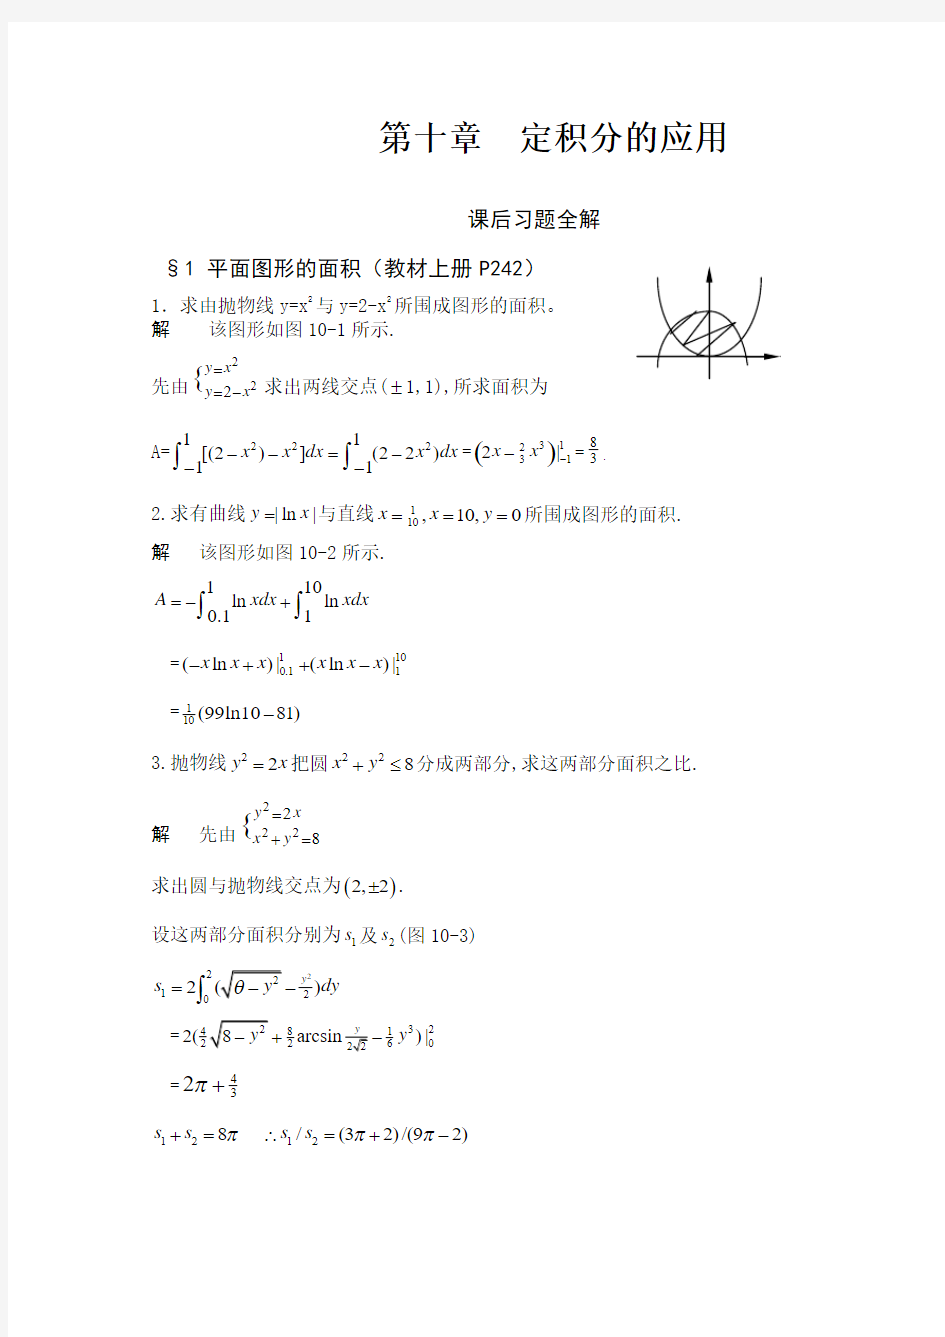 华东师范大学 数学分析 第10章